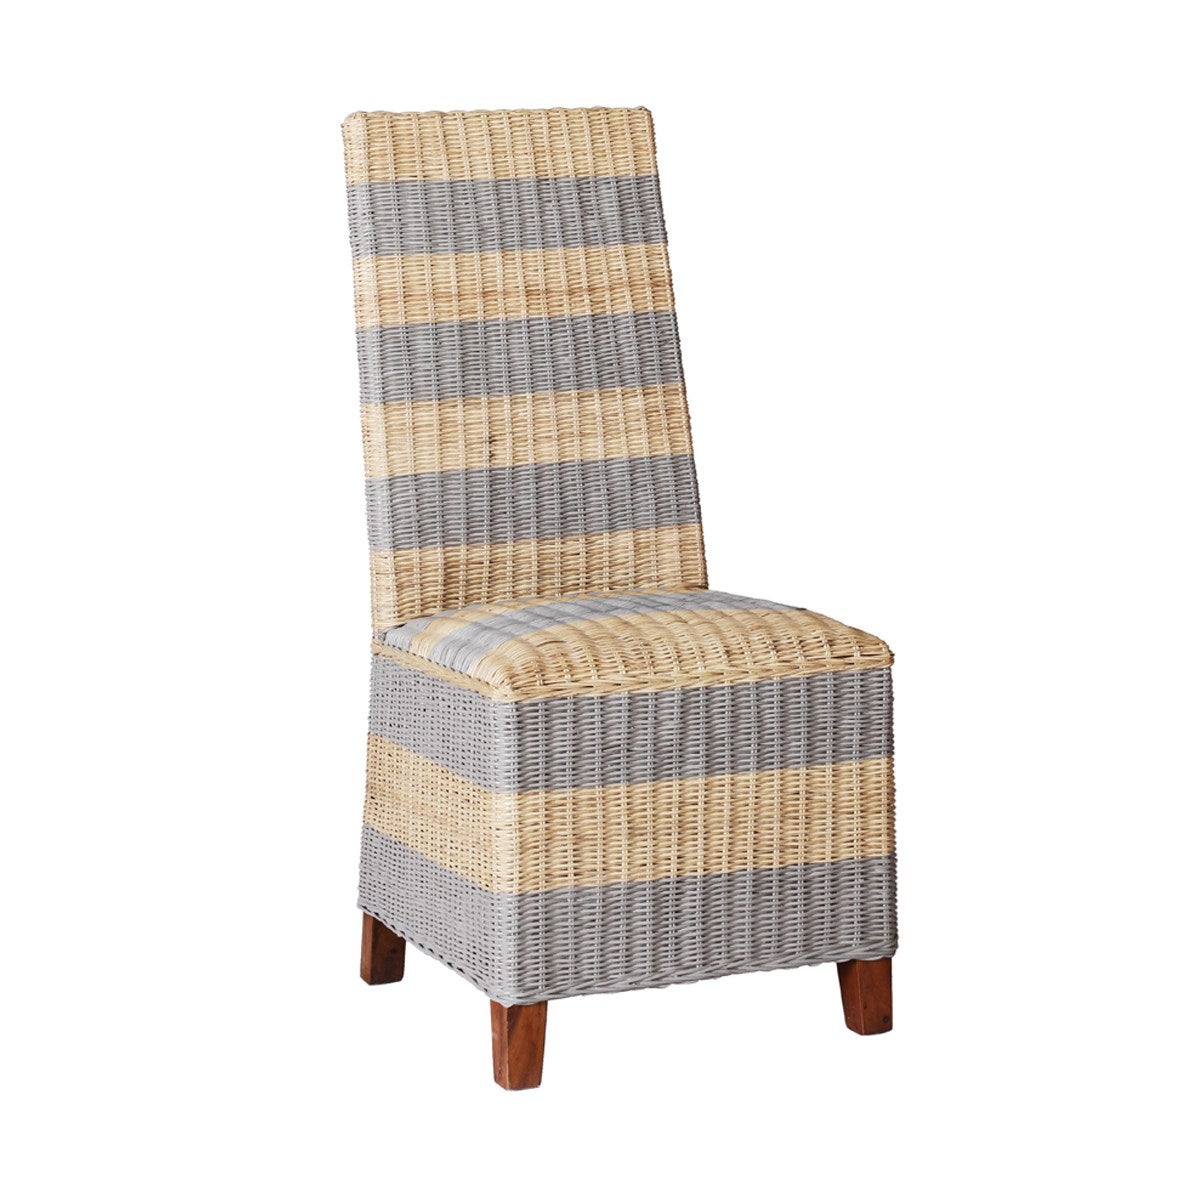 Striped Fargo Chair